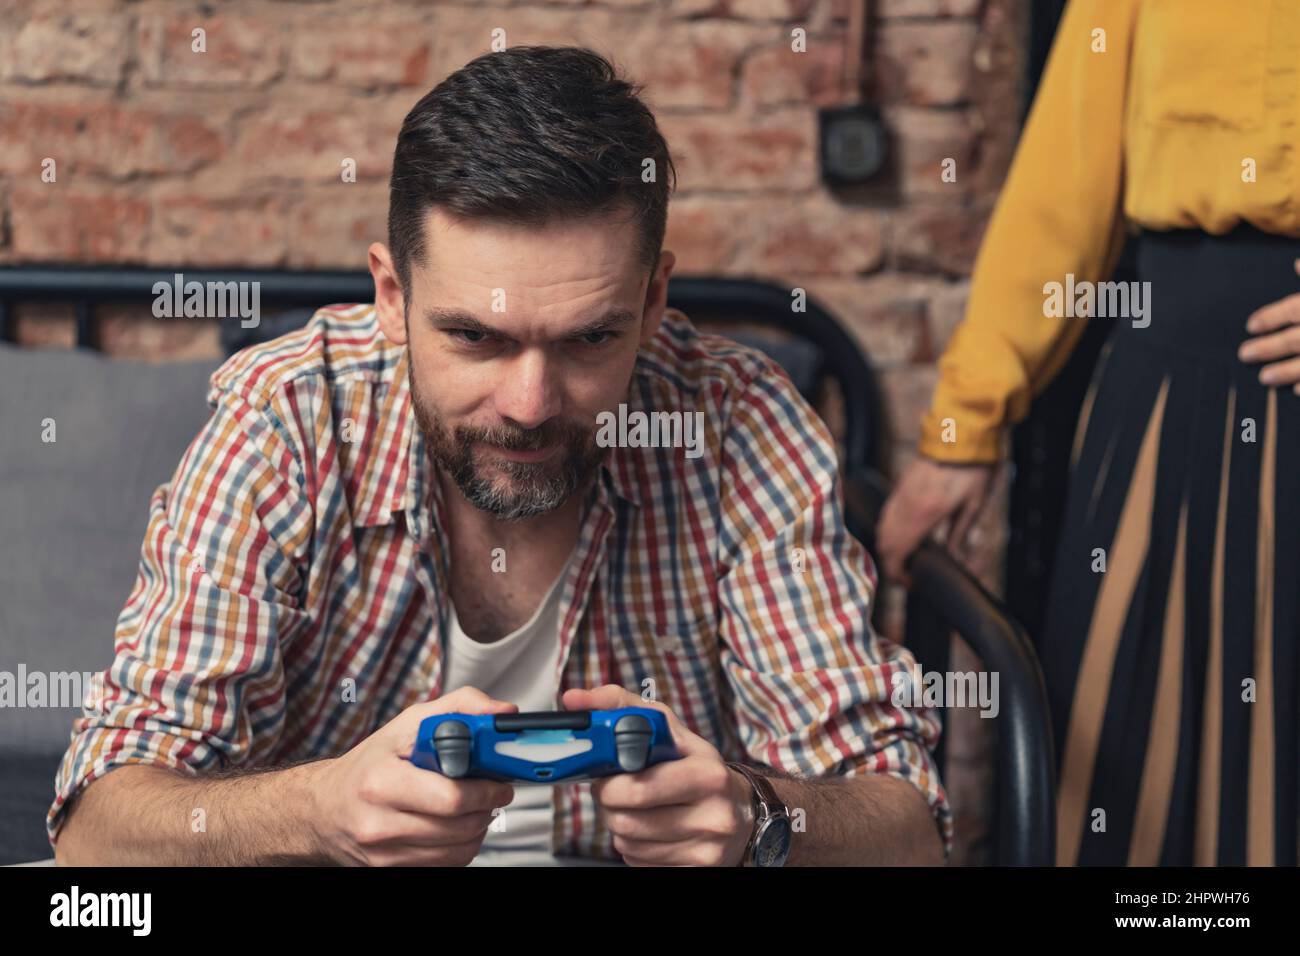 l'uomo caucasico in una maglietta senza bottoni che gioca con il controller di gioco blu e ignora la sua amica donna. Foto di alta qualità Foto Stock